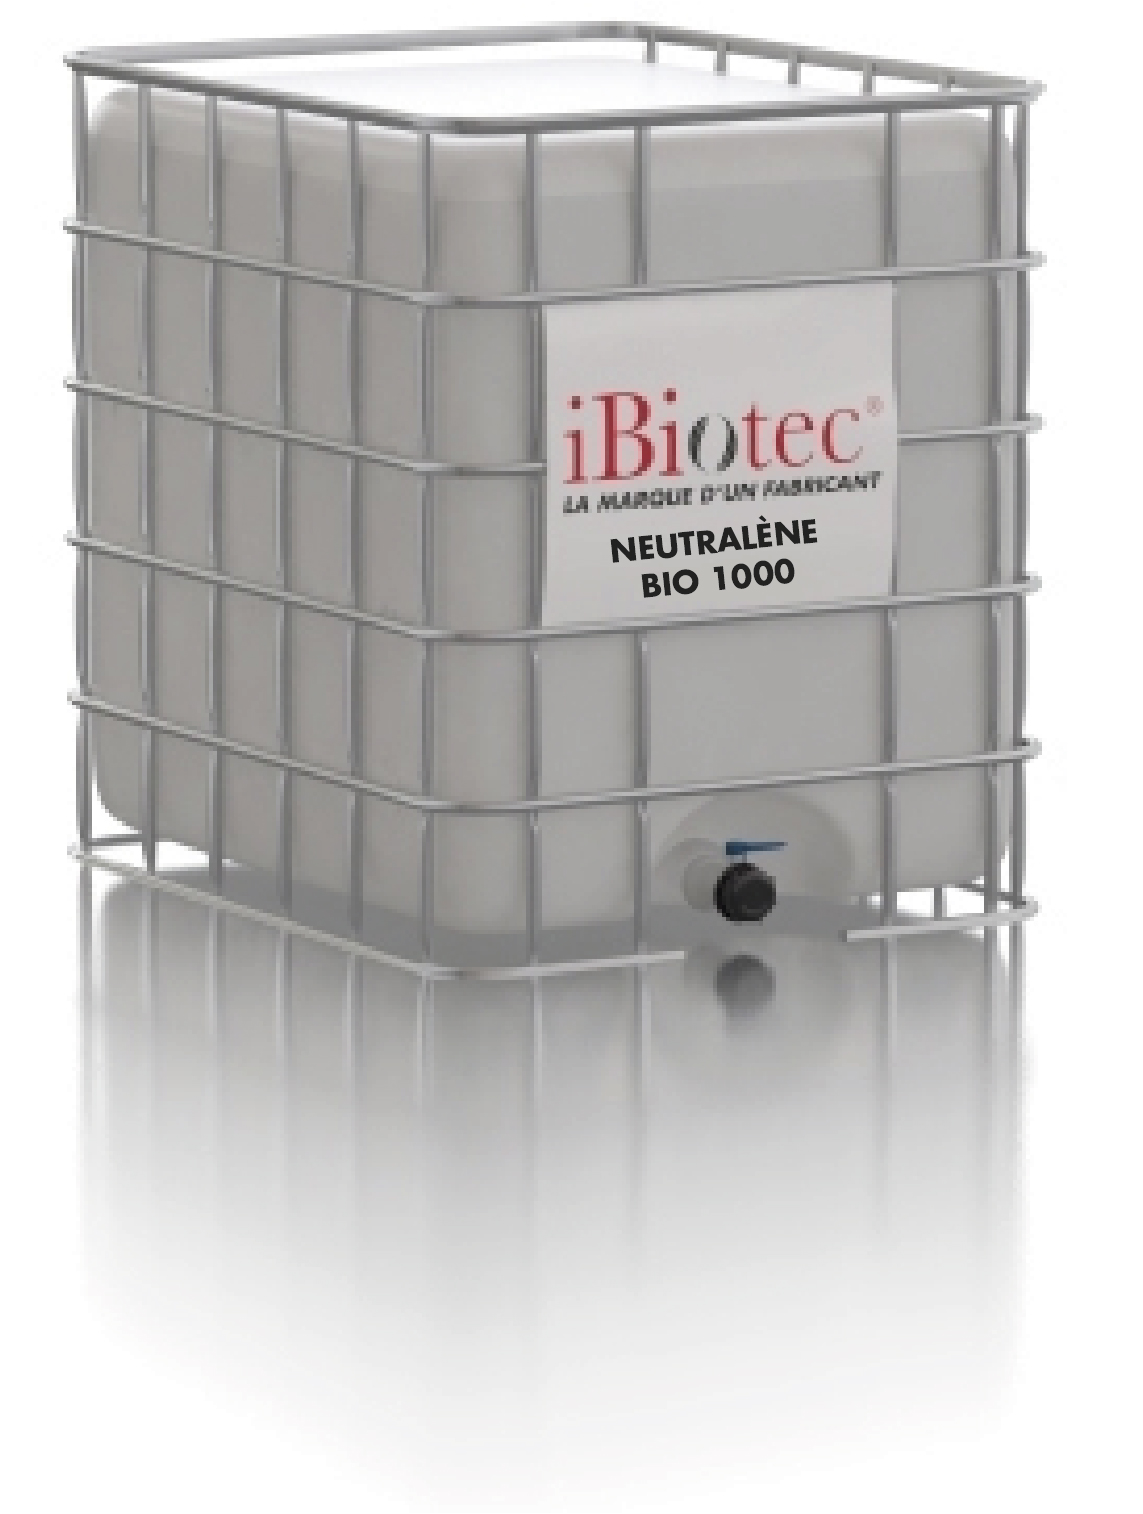 脱脂溶剂、清洁剂、非易燃、ATEX区域降级。无挥发性有机化合物（COV）、溶液管理计划（PGS）优化（IED指令）。经合组织化学品测试导则规定可生物降解。通过NSF K1认证。具有强大的脱脂清洗沉淀效能。DETECT BLUE®可移动设备，支持追溯及检测。符合HACCP BRC8 IFS标准。非易燃安全脱脂剂。无COV。经NSF认证。特制脱脂清洗台。可于高温下使用，适用于清洗机。电介质。清洗台脱脂剂、工业脱脂剂制造商、非易燃脱脂剂、可生物降解脱脂剂、安全脱脂剂、食品接触用脱脂剂、清洗台溶剂、可生物降解溶剂、安全溶剂、食品接触用溶剂、脱脂剂、溶剂、非易燃脱脂剂、无VOC脱脂剂、清洗台脱脂剂、清洗台脱脂剂、电介质溶剂。工业溶剂制造商、工业溶剂供应商、工业溶剂、非易燃溶剂。NSF认证溶剂。食品工业溶液。热用溶剂。不含COV溶剂。清洗台溶液、脱脂清洗台溶液。新型溶剂。新溶剂。脱脂清洗台溶剂。二氯甲烷替代品。甲叉二氯替代品。Ch2 cl2替代品。CMR替代品。丙酮替代品。丙酮替代品。NMP替代品。聚氨酯溶剂。环氧树脂溶剂。聚酯溶剂。胶水溶剂。涂料溶剂。树脂溶剂。清漆溶剂。弹性体溶剂。工业保养品